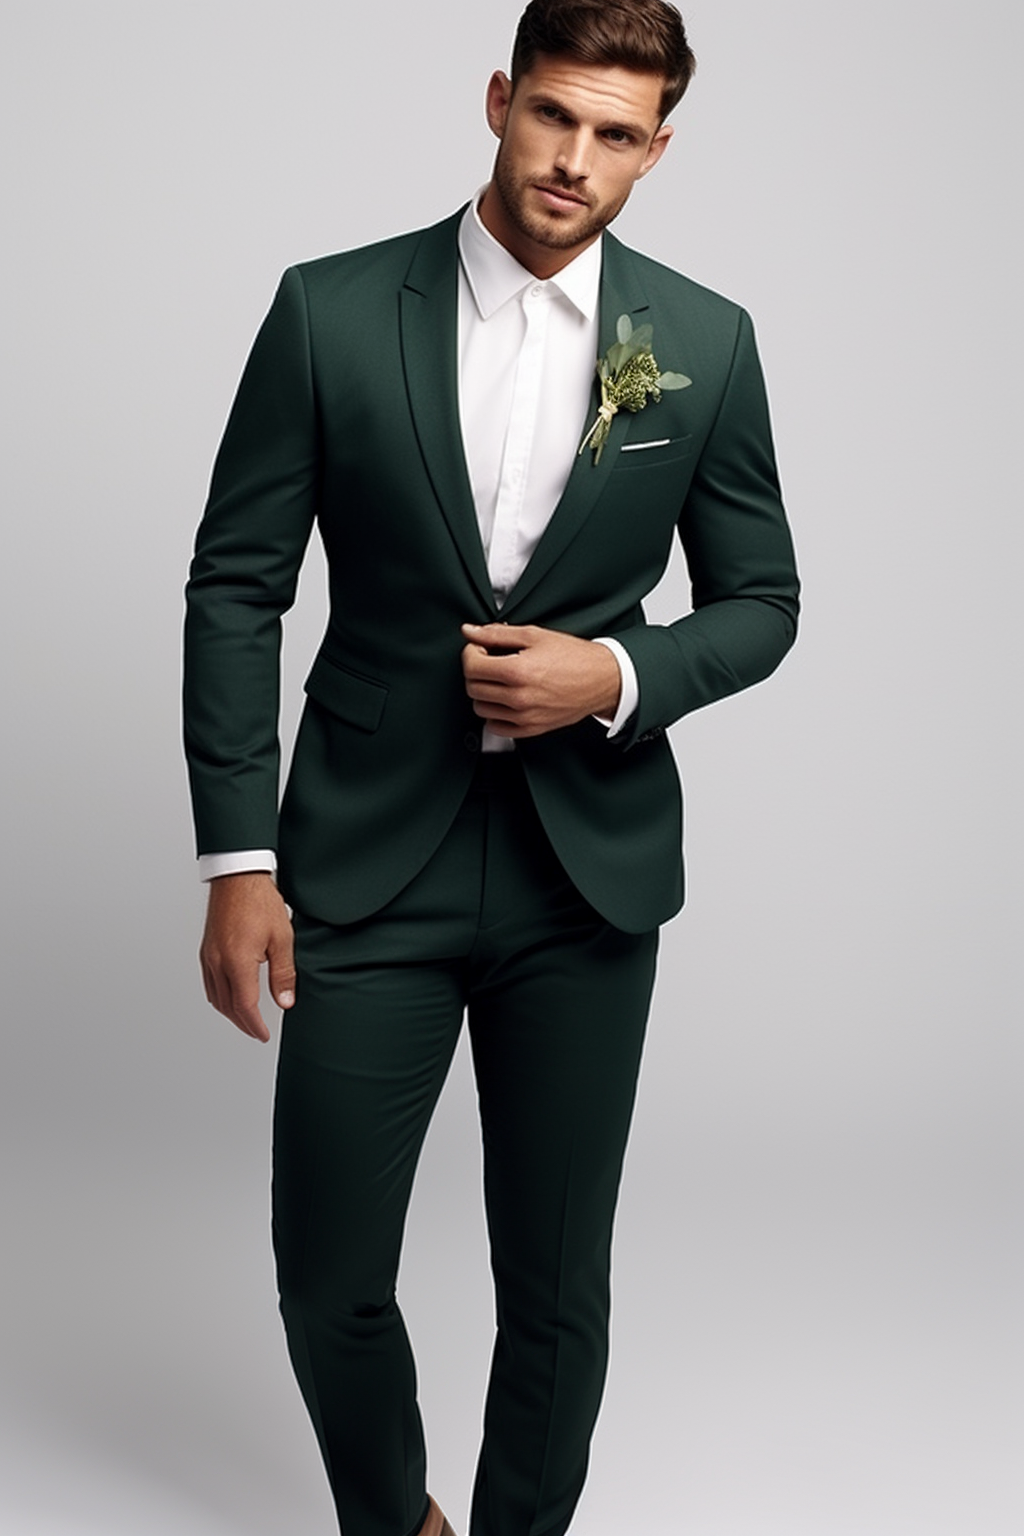 Men 2 Piece Suit Green Wedding Suit Elegant Dinner Suit Sainly– SAINLY